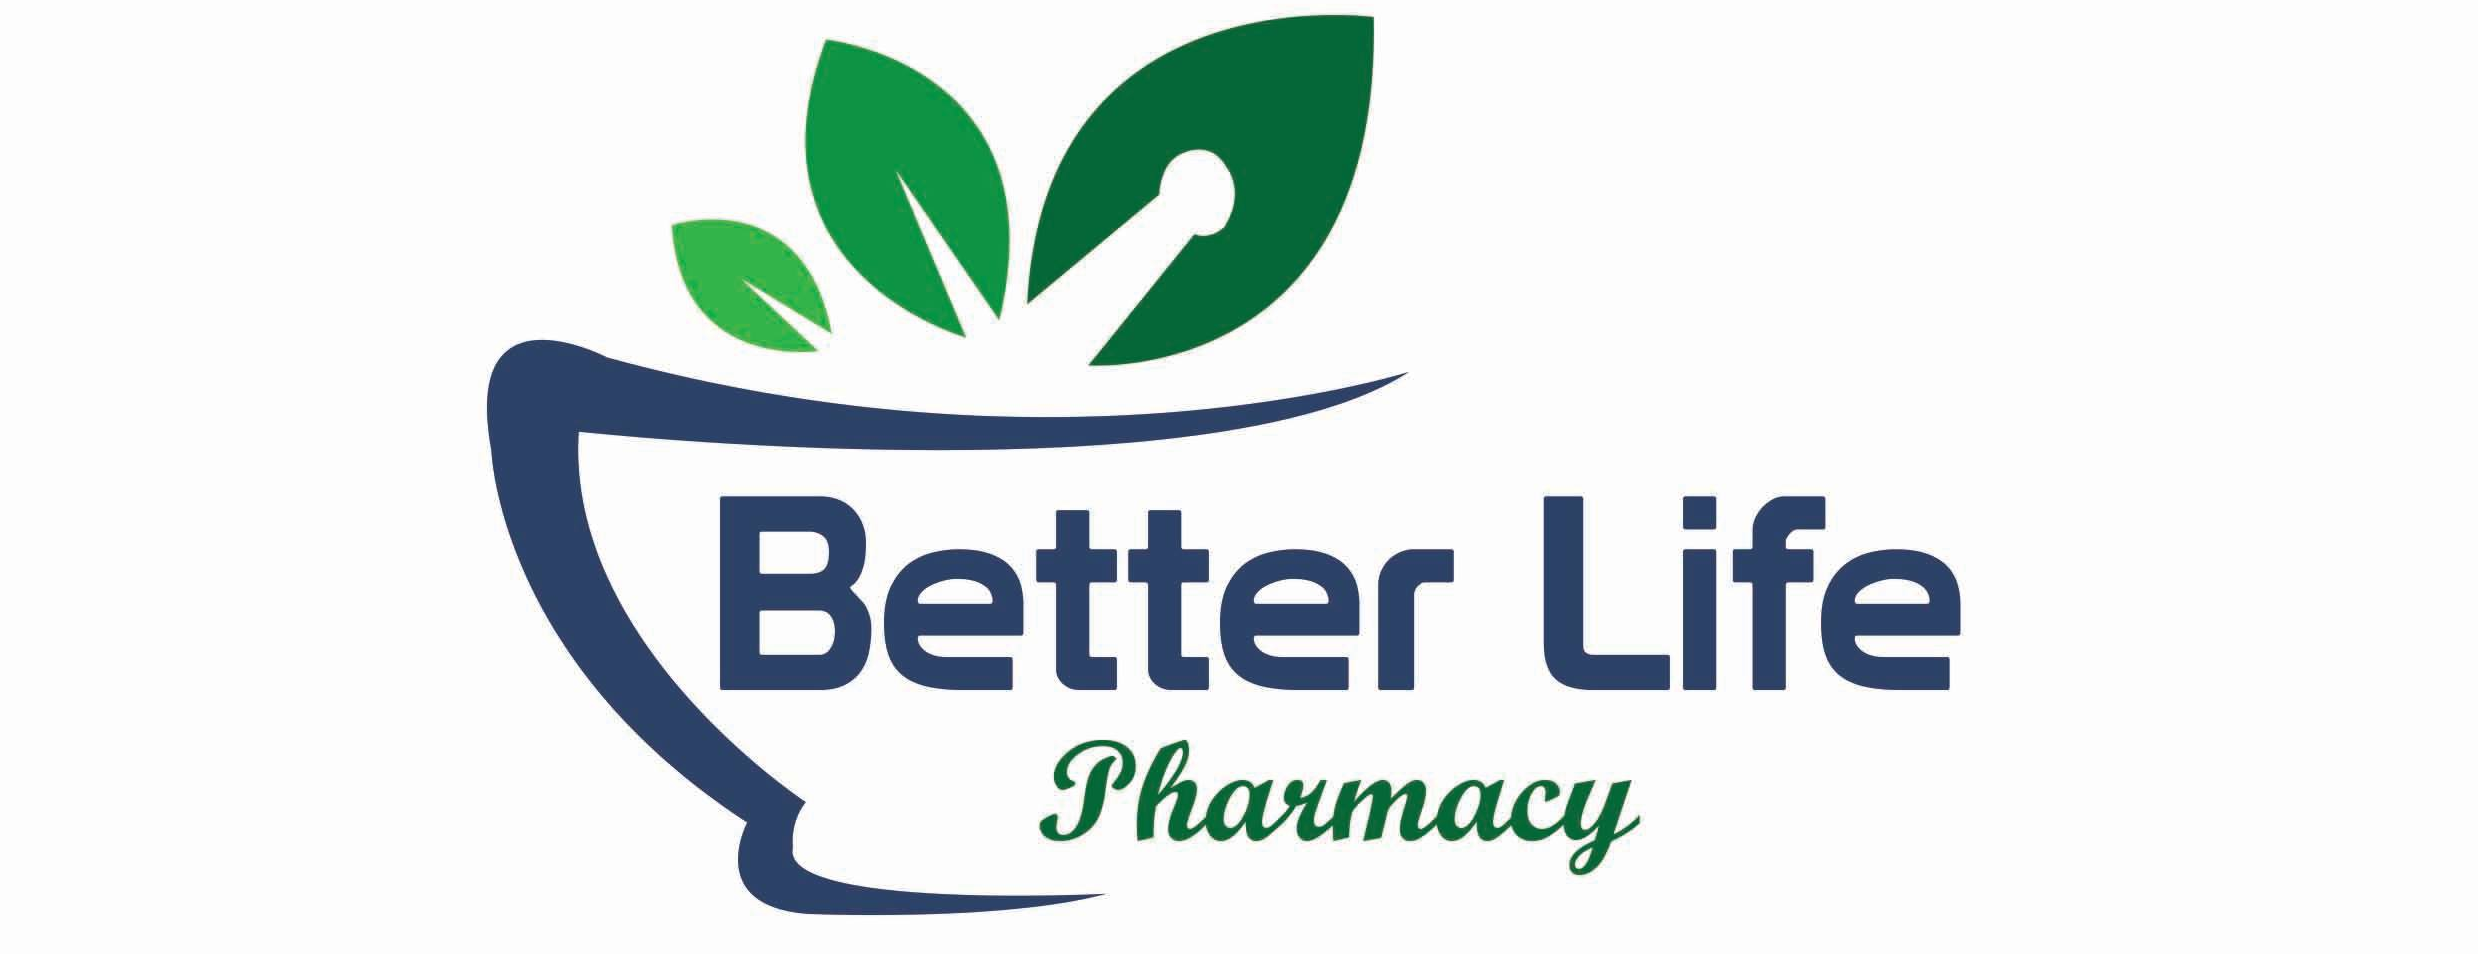 Better Life Pharmacy - Garwood Logo